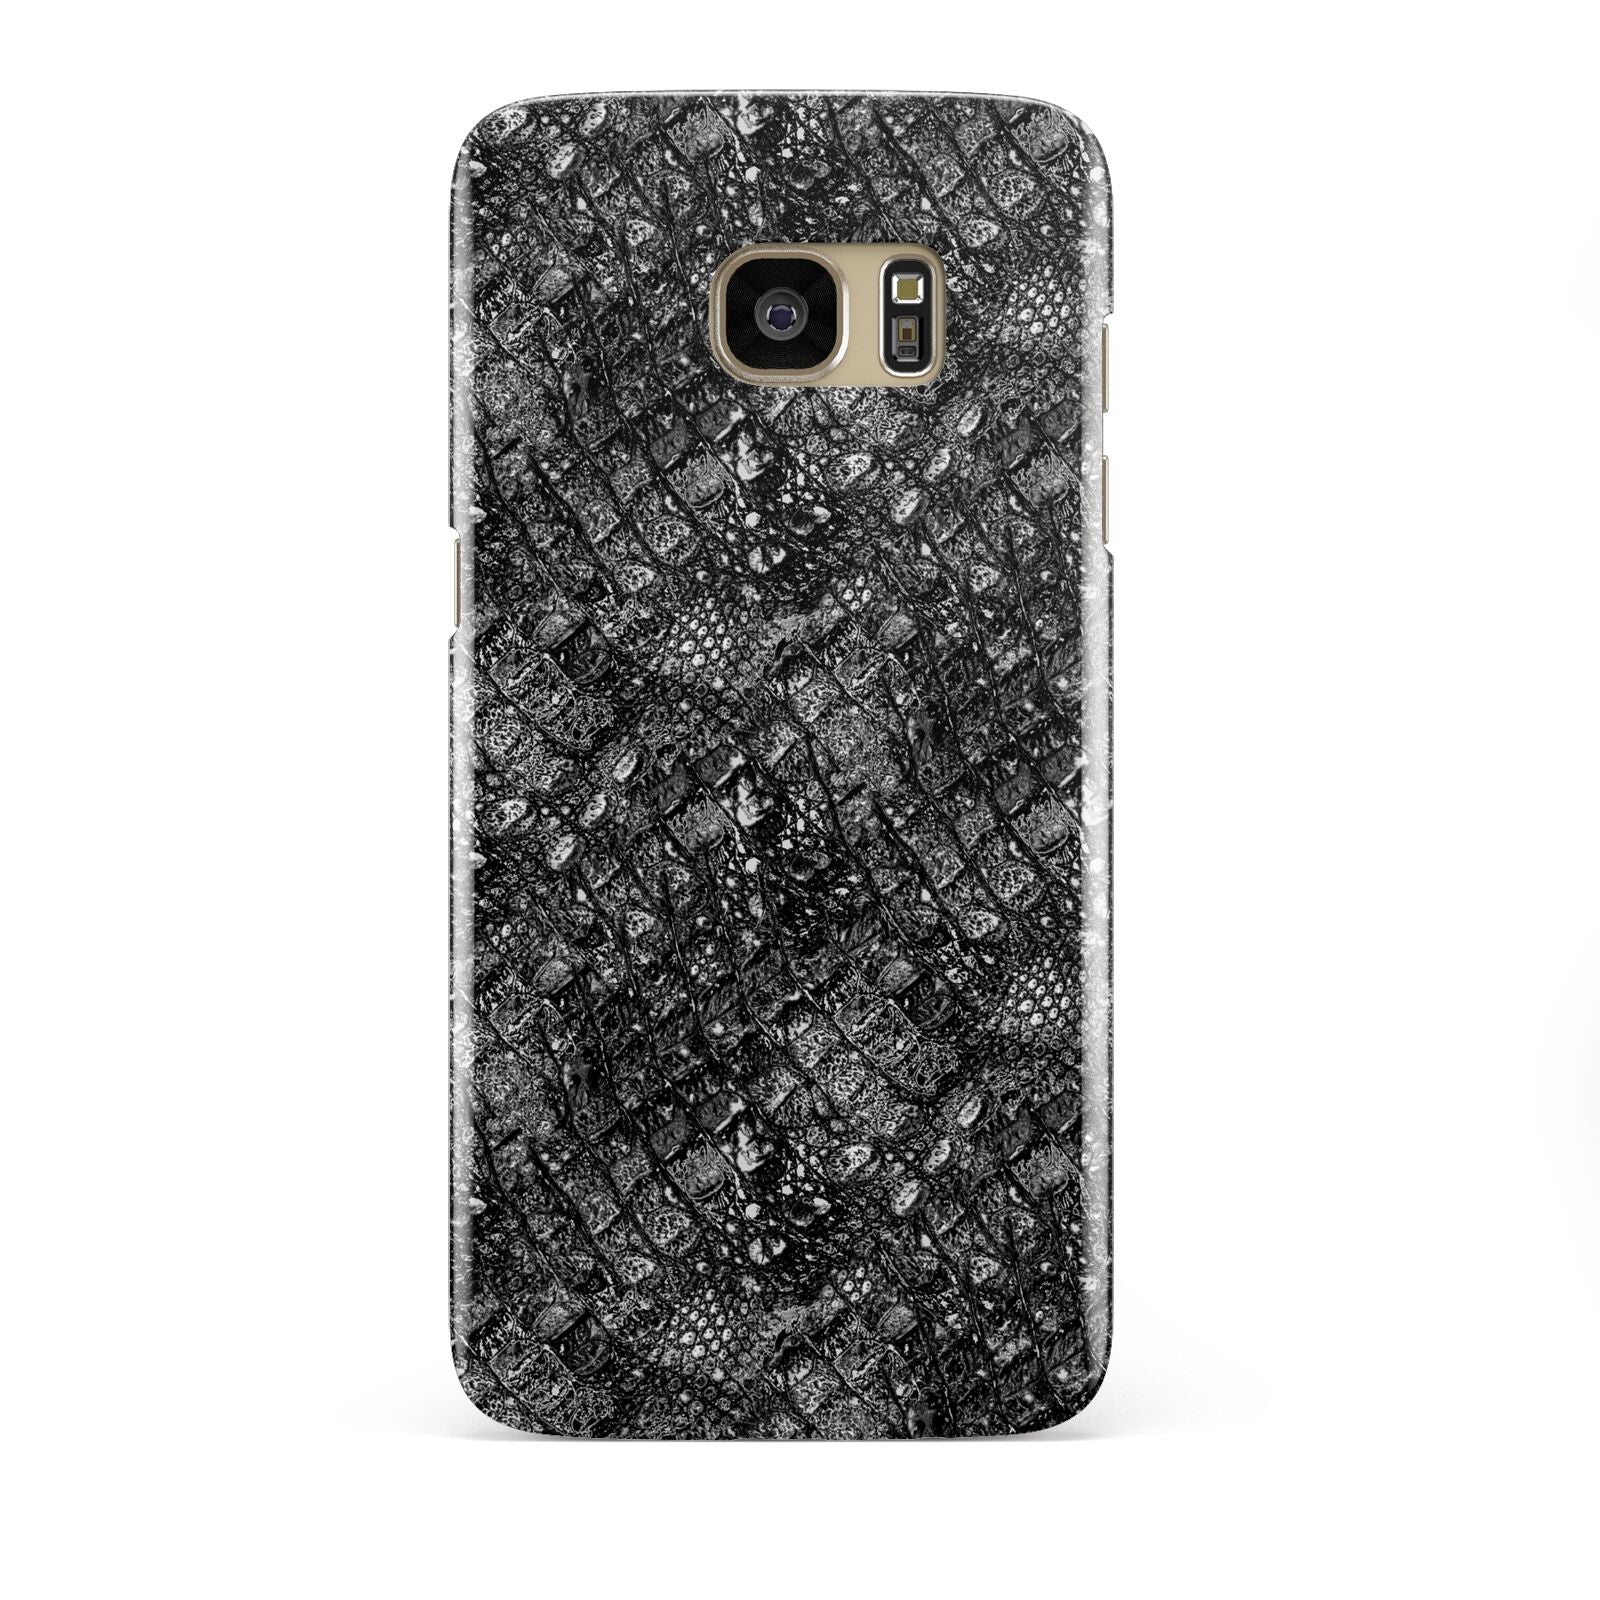 Snakeskin Design Samsung Galaxy S7 Edge Case